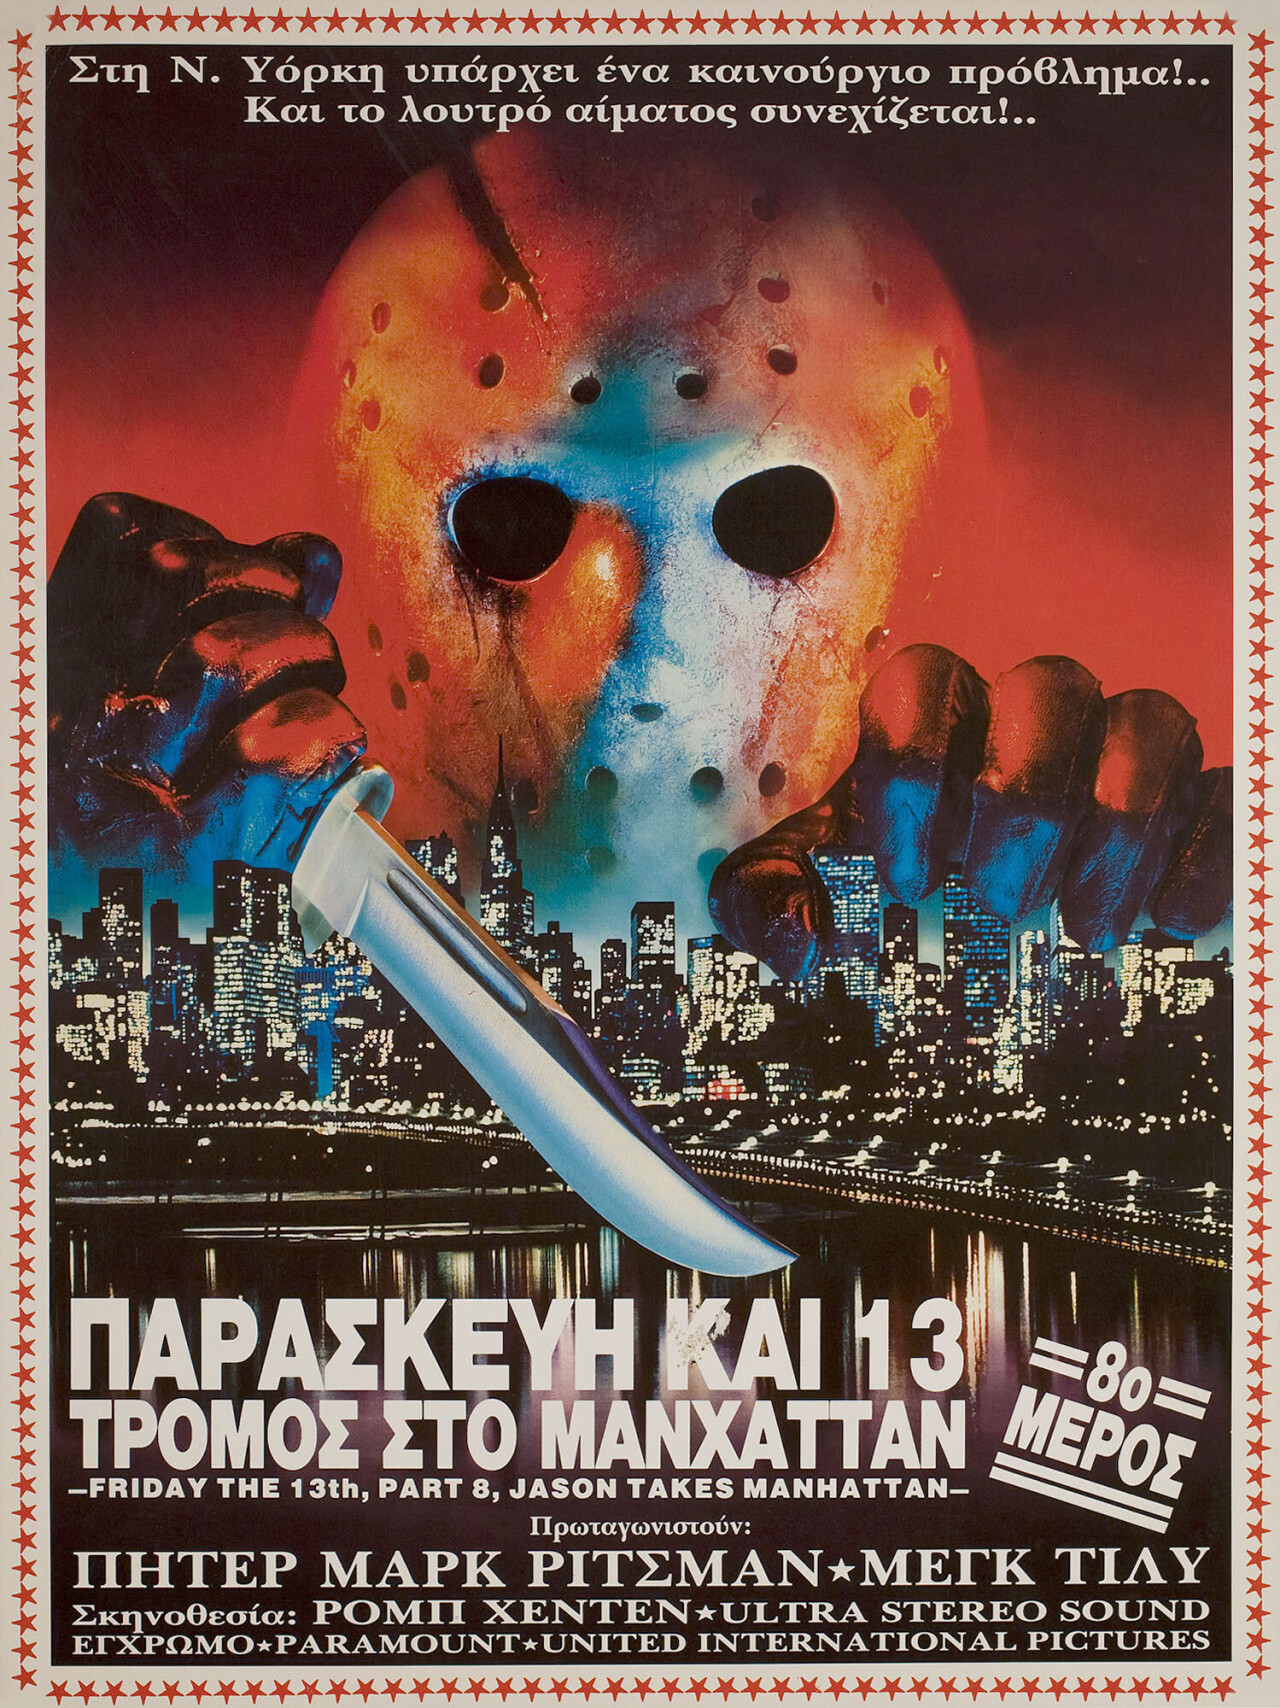 Пятница 13-е — Часть 8: Джейсон штурмует Манхэттен (Jason Takes Manhattan, 1989), режиссёр Роб Хедден, греческий постер к фильму (ужасы, 1989 год)